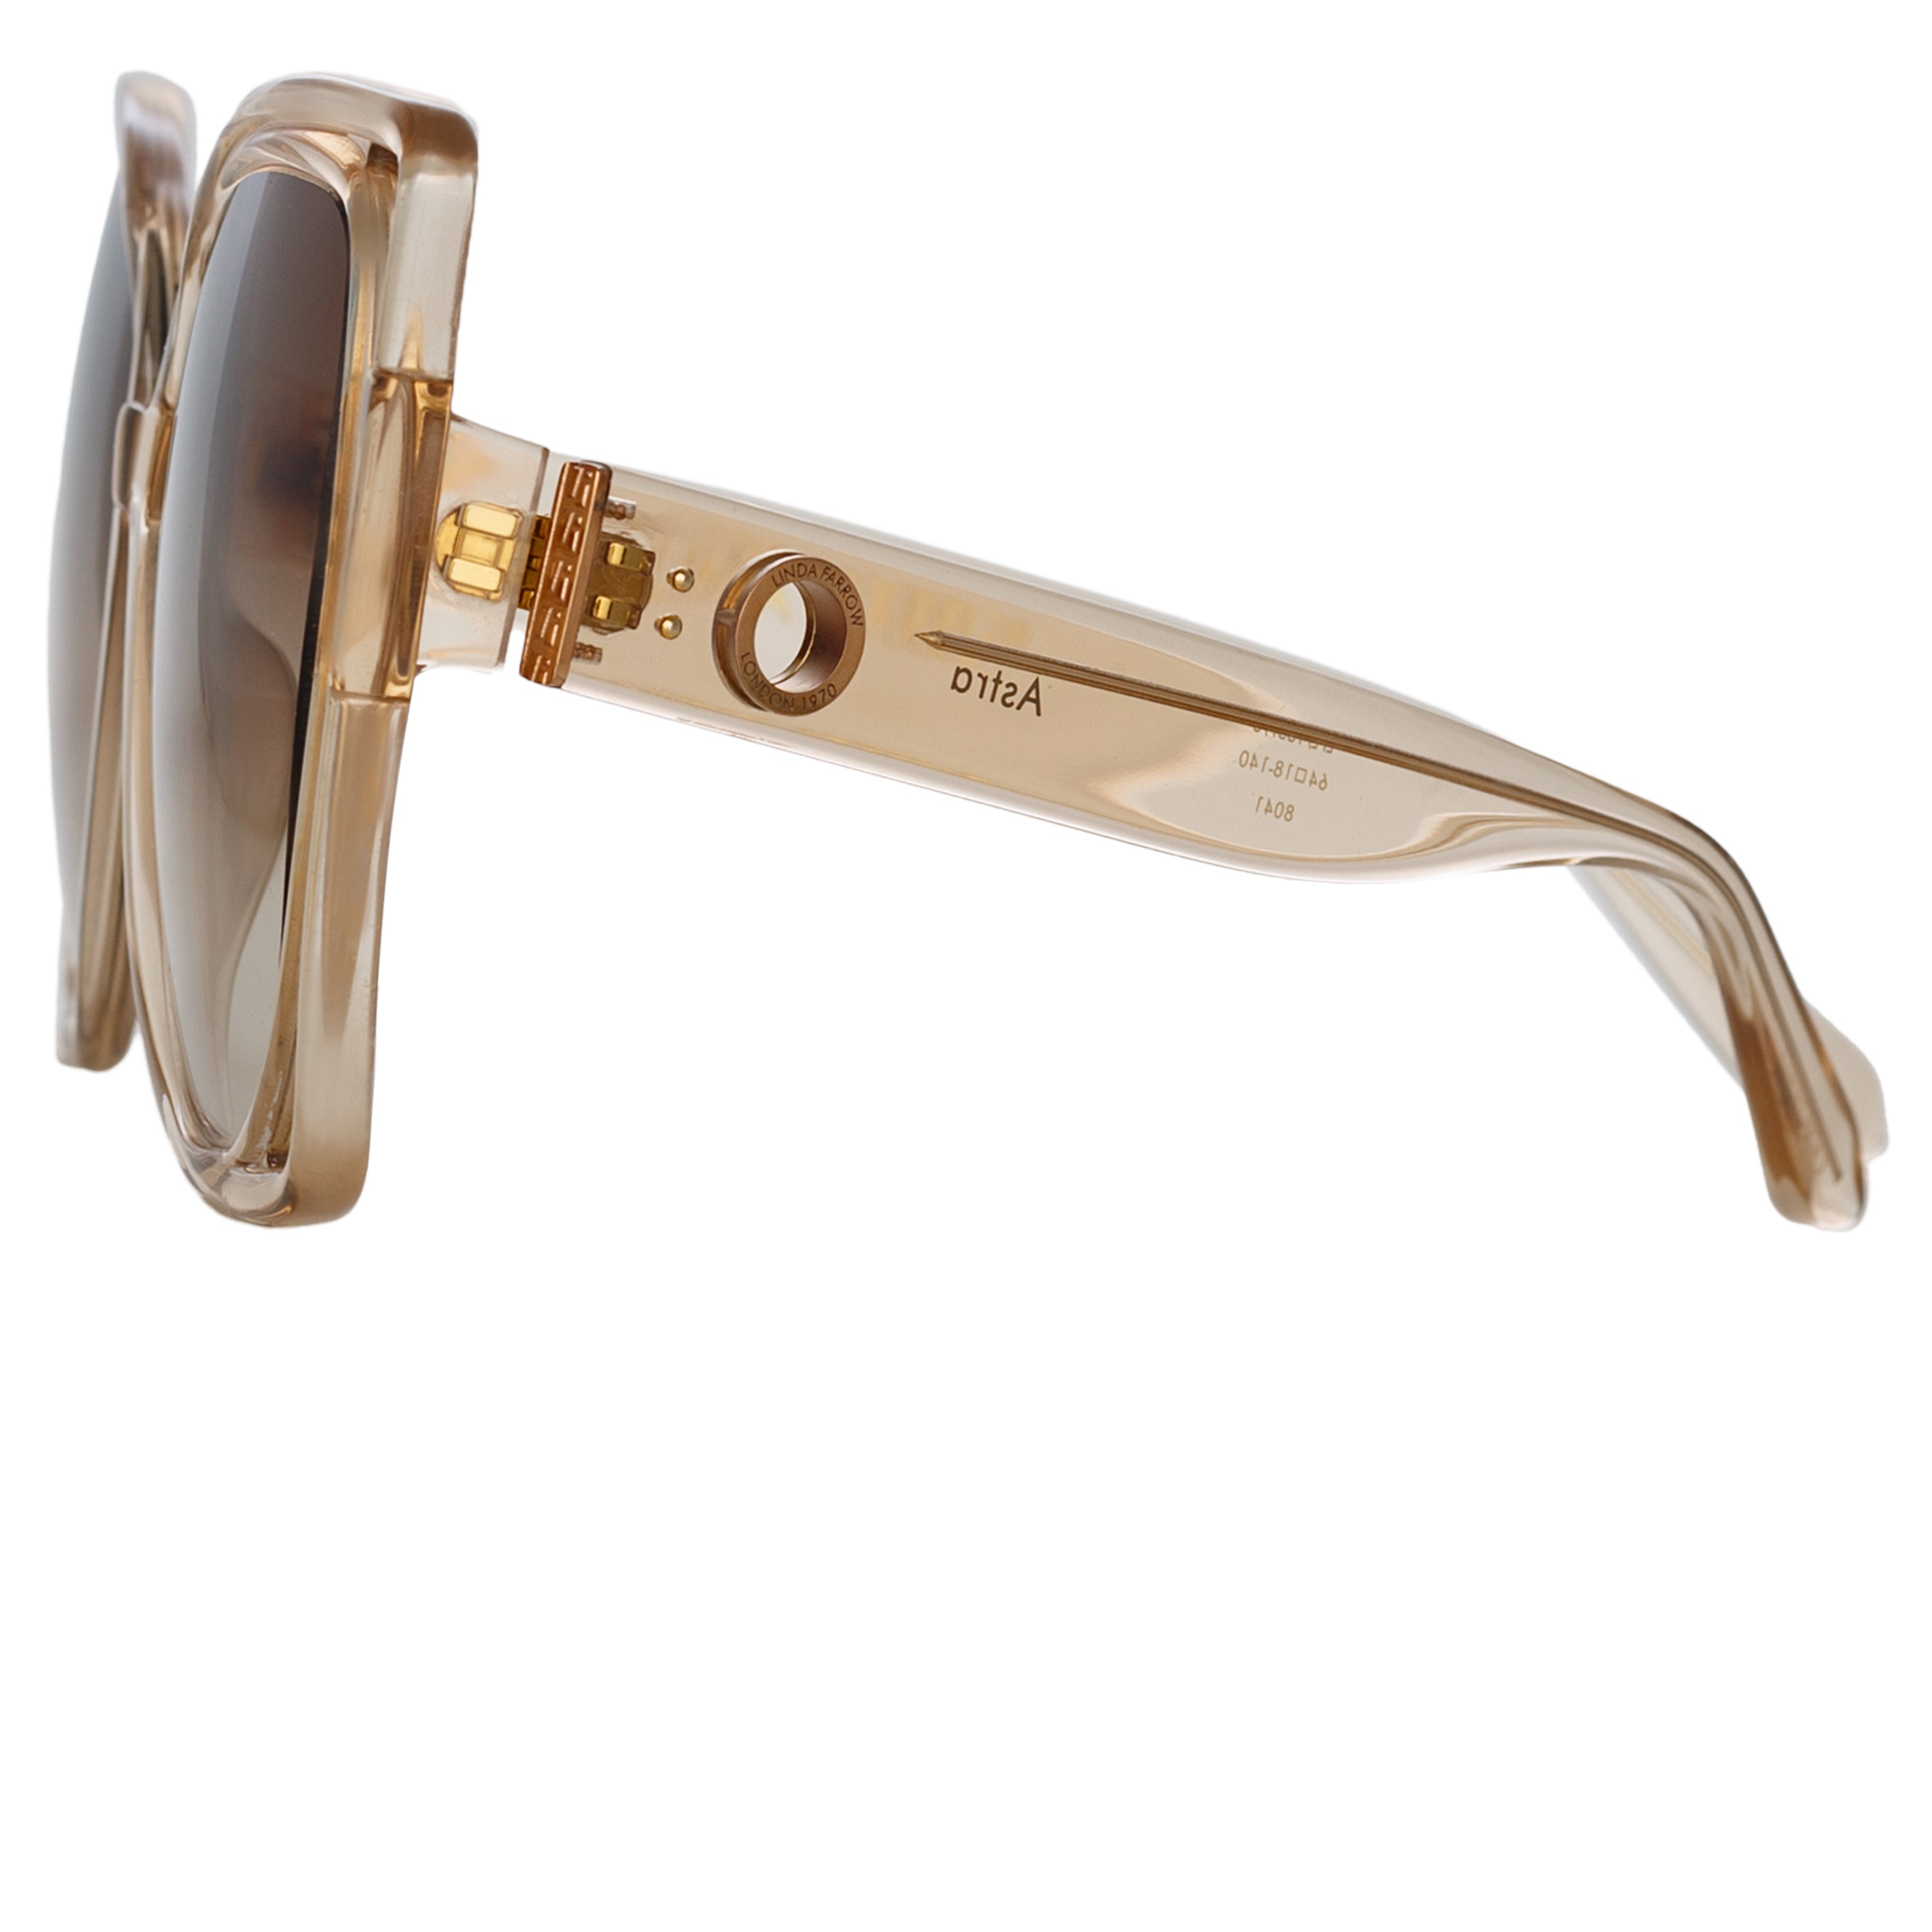 Carolina Flat Top Sunglasses in Ash by LINDA FARROW – LINDA FARROW